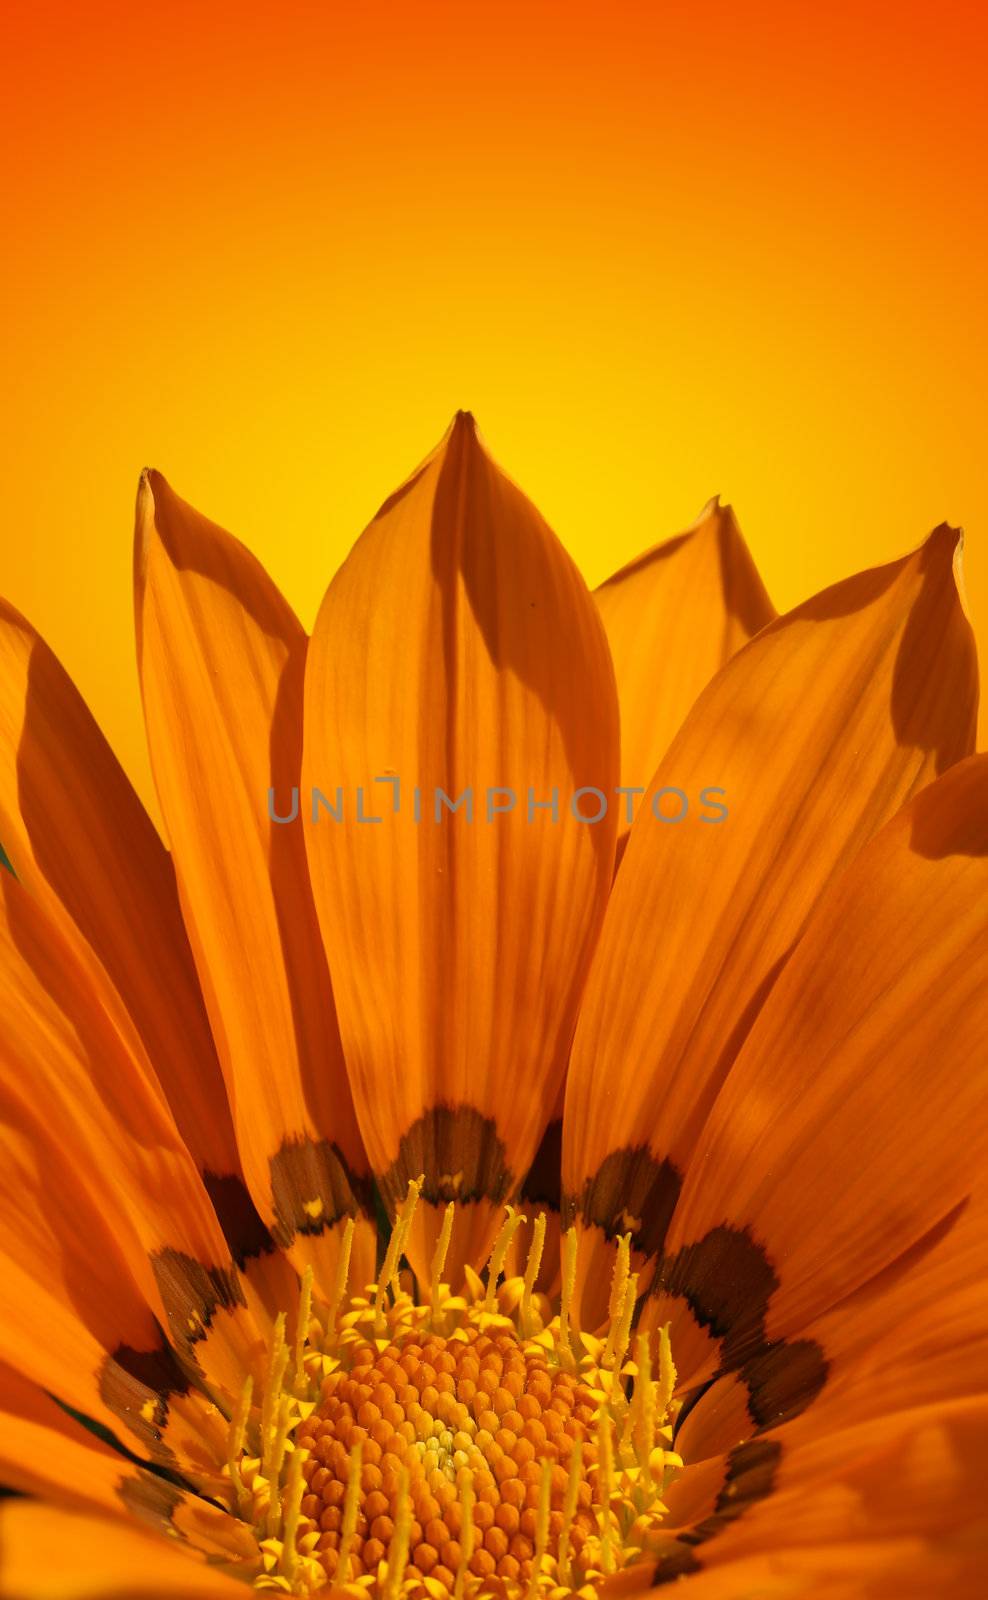 Bright orange flower background by Mirage3